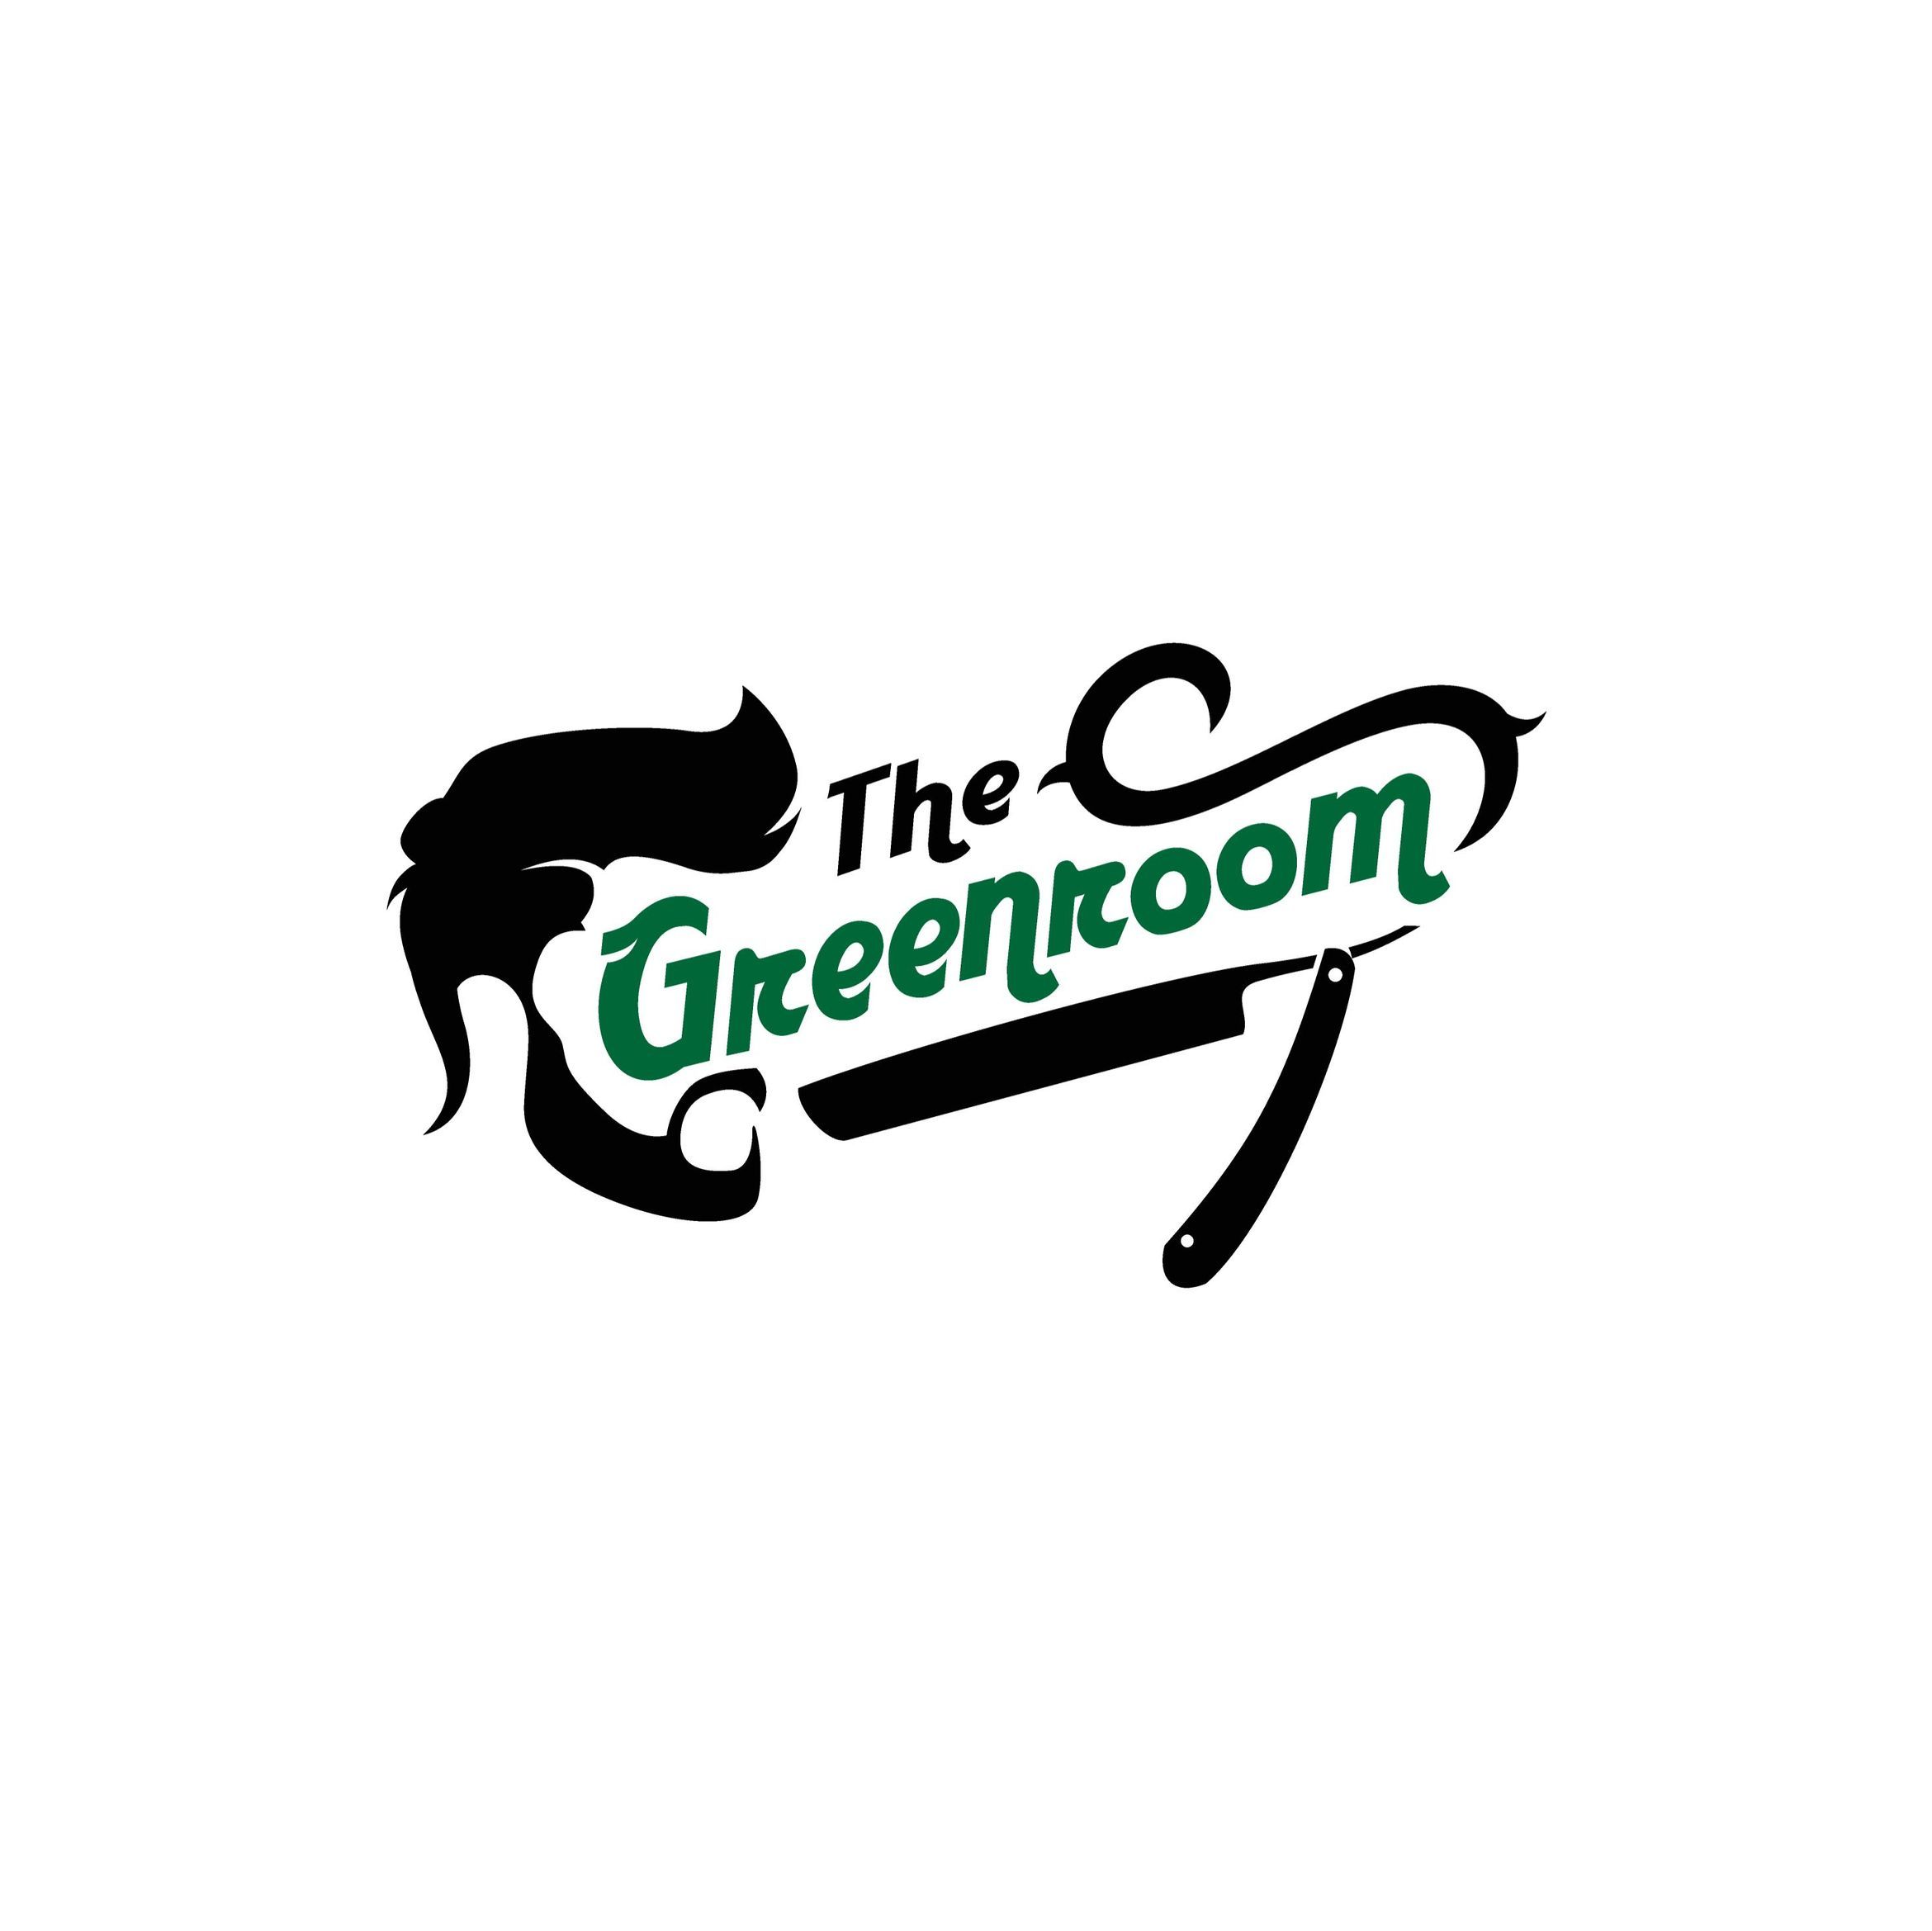 The Greenroom Barber, 402 Coomer St, Suite 3, Somerset, 42503